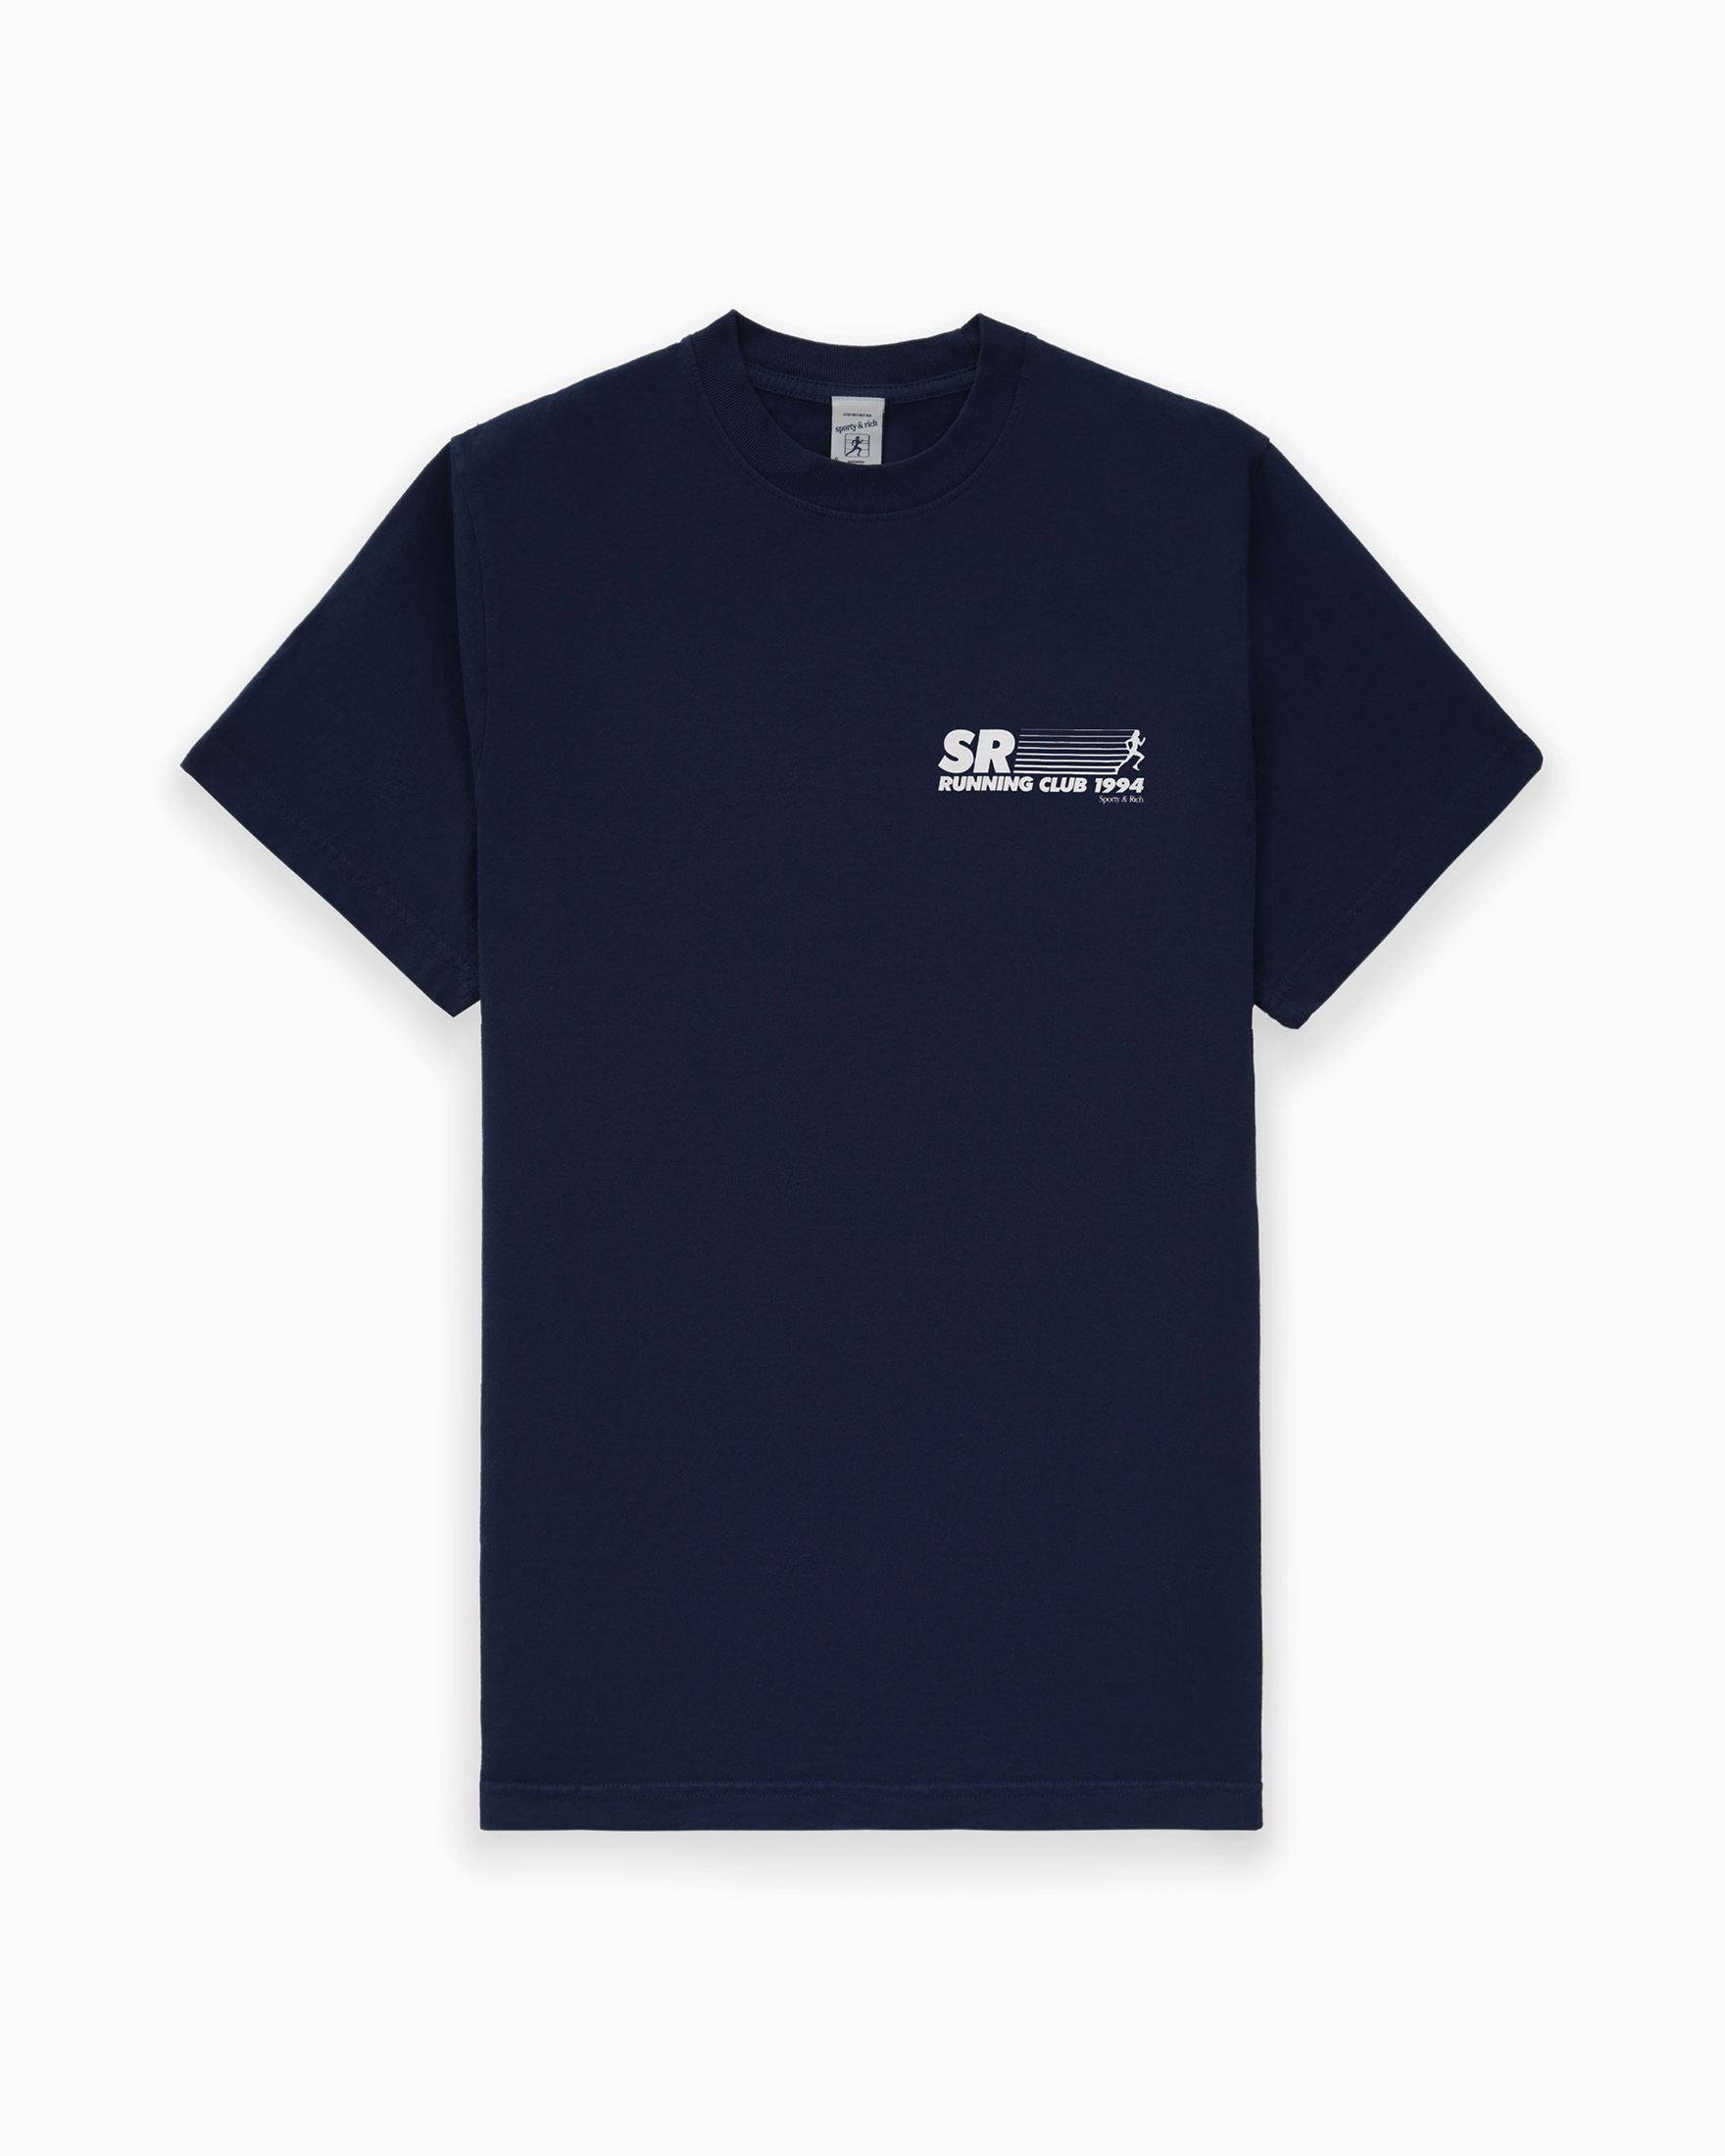 SR Running Club T-Shirt Sporty & Rich Tops T-Shirts Blue